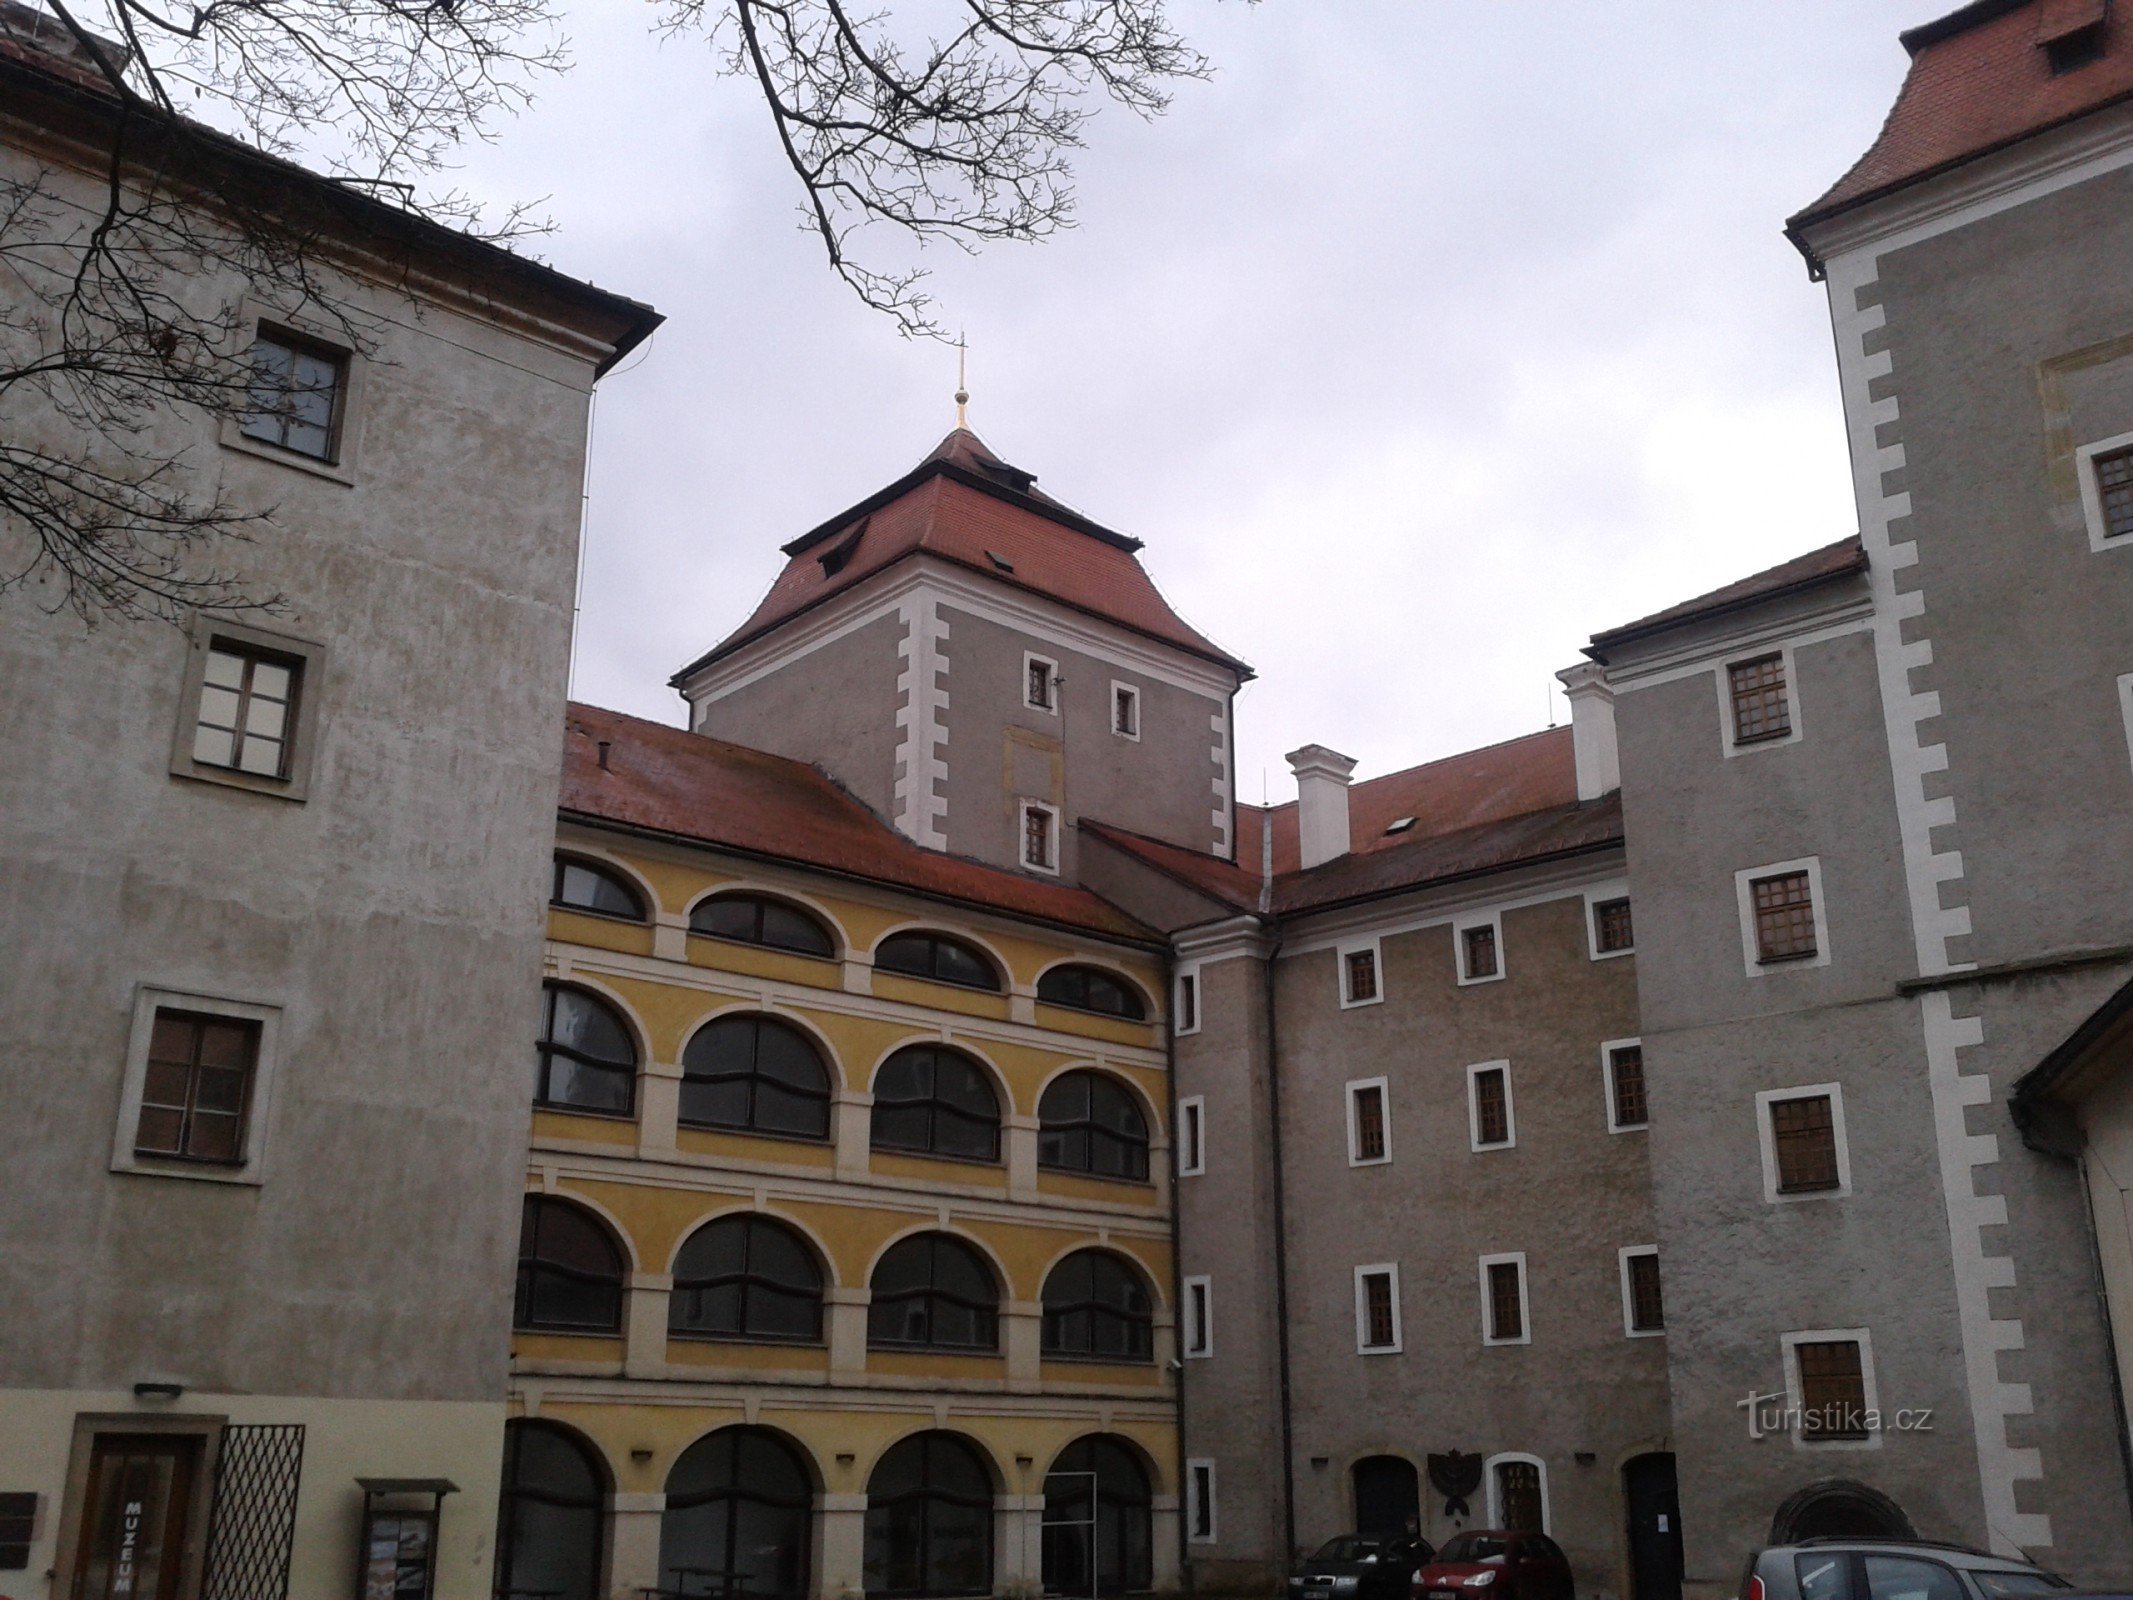 Mladá Boleslav Castle